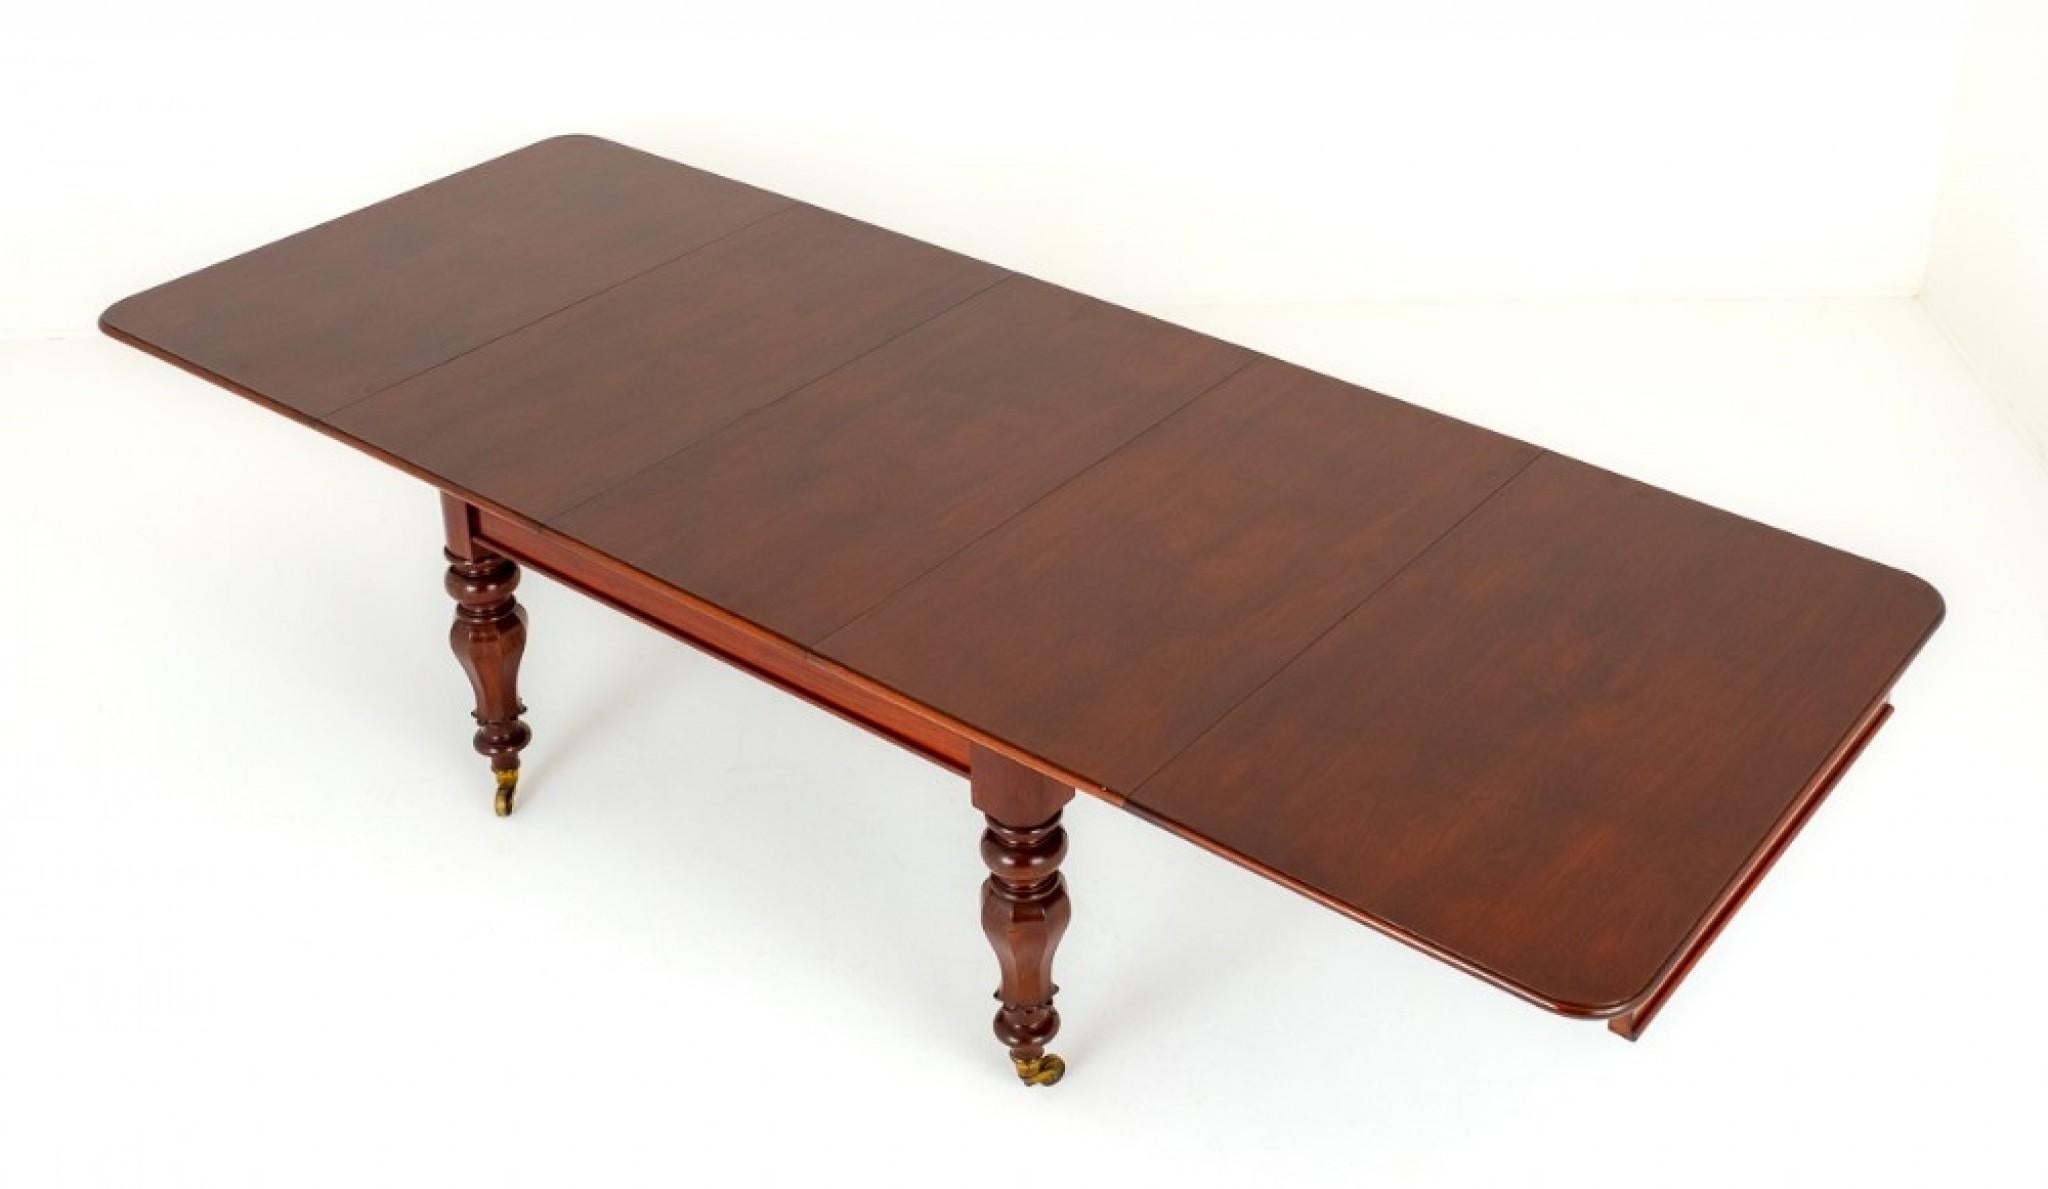 Table de salle à manger à rallonge William IV en acajou.
Cette table repose sur des pieds octogonaux et tournés avec des roulettes d'origine en laiton.
Circa 19ème siècle
La table se déploie à l'aide d'un mécanisme télescopique extractible pour